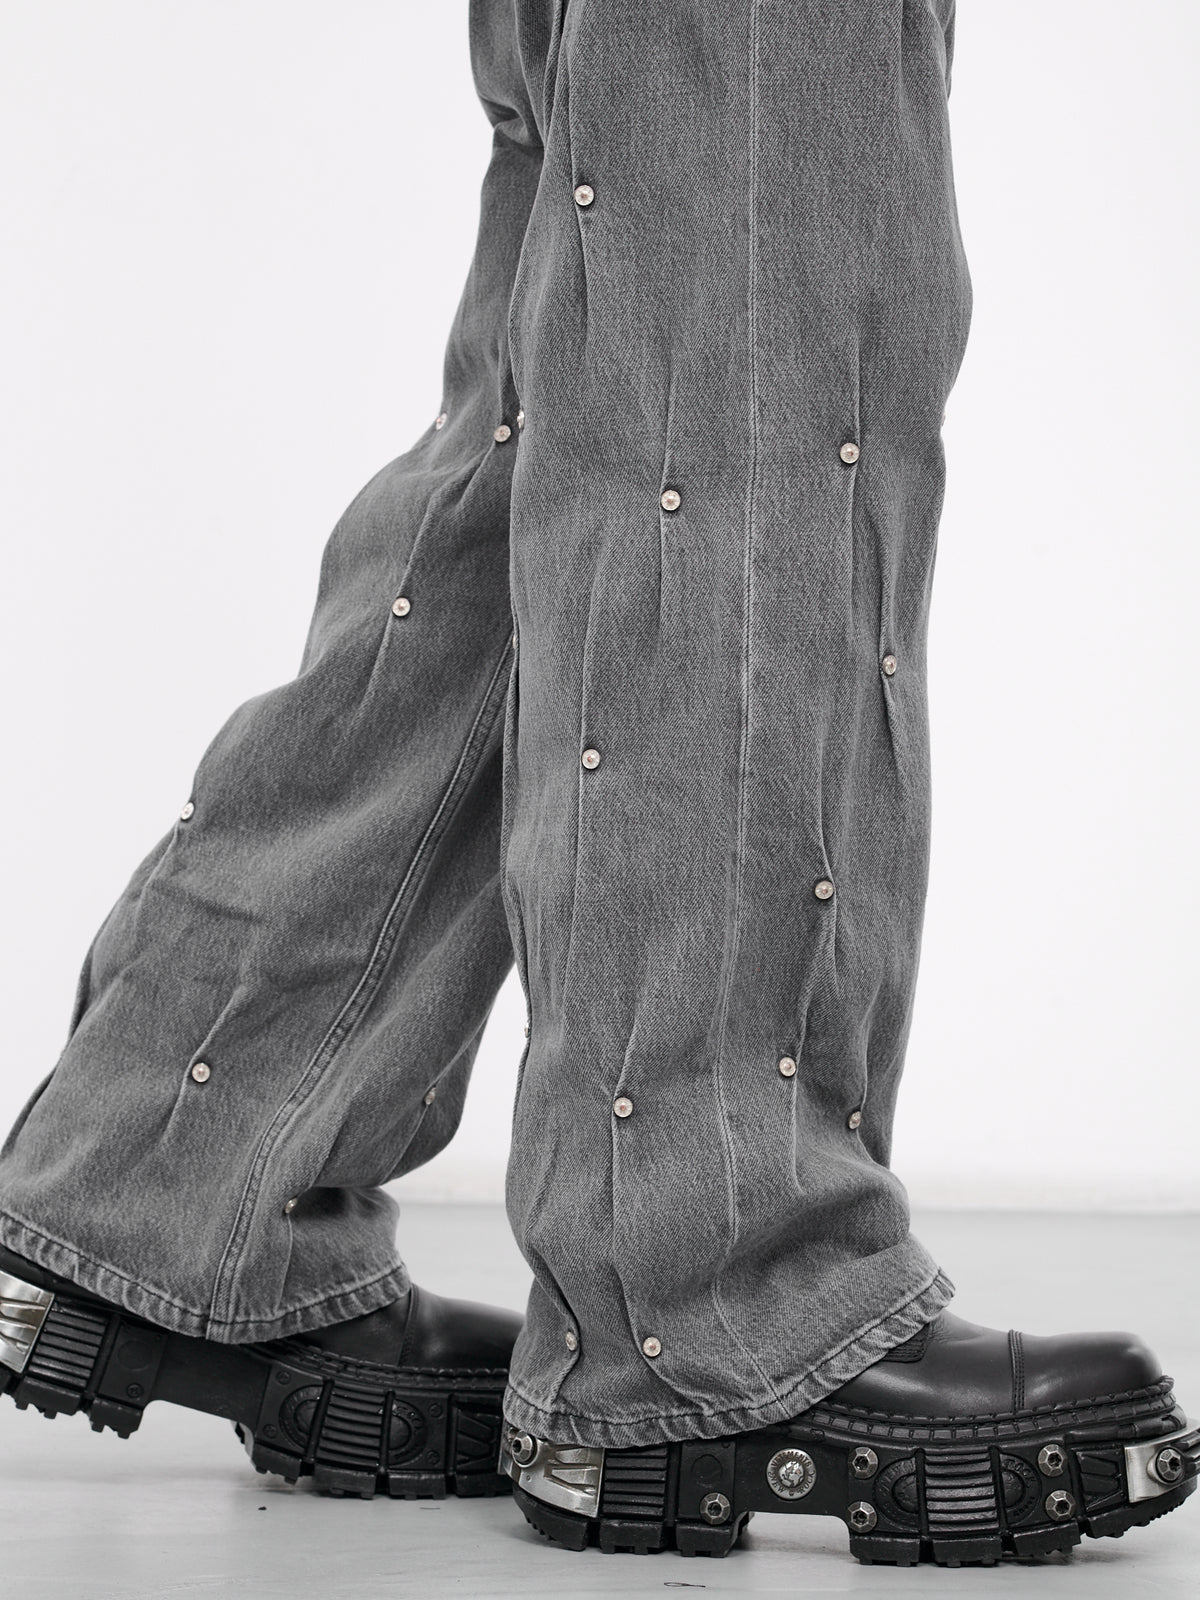 Multi Rivet Denim Jeans (KU4SMT11BP-T1673-CHISELED-STON)